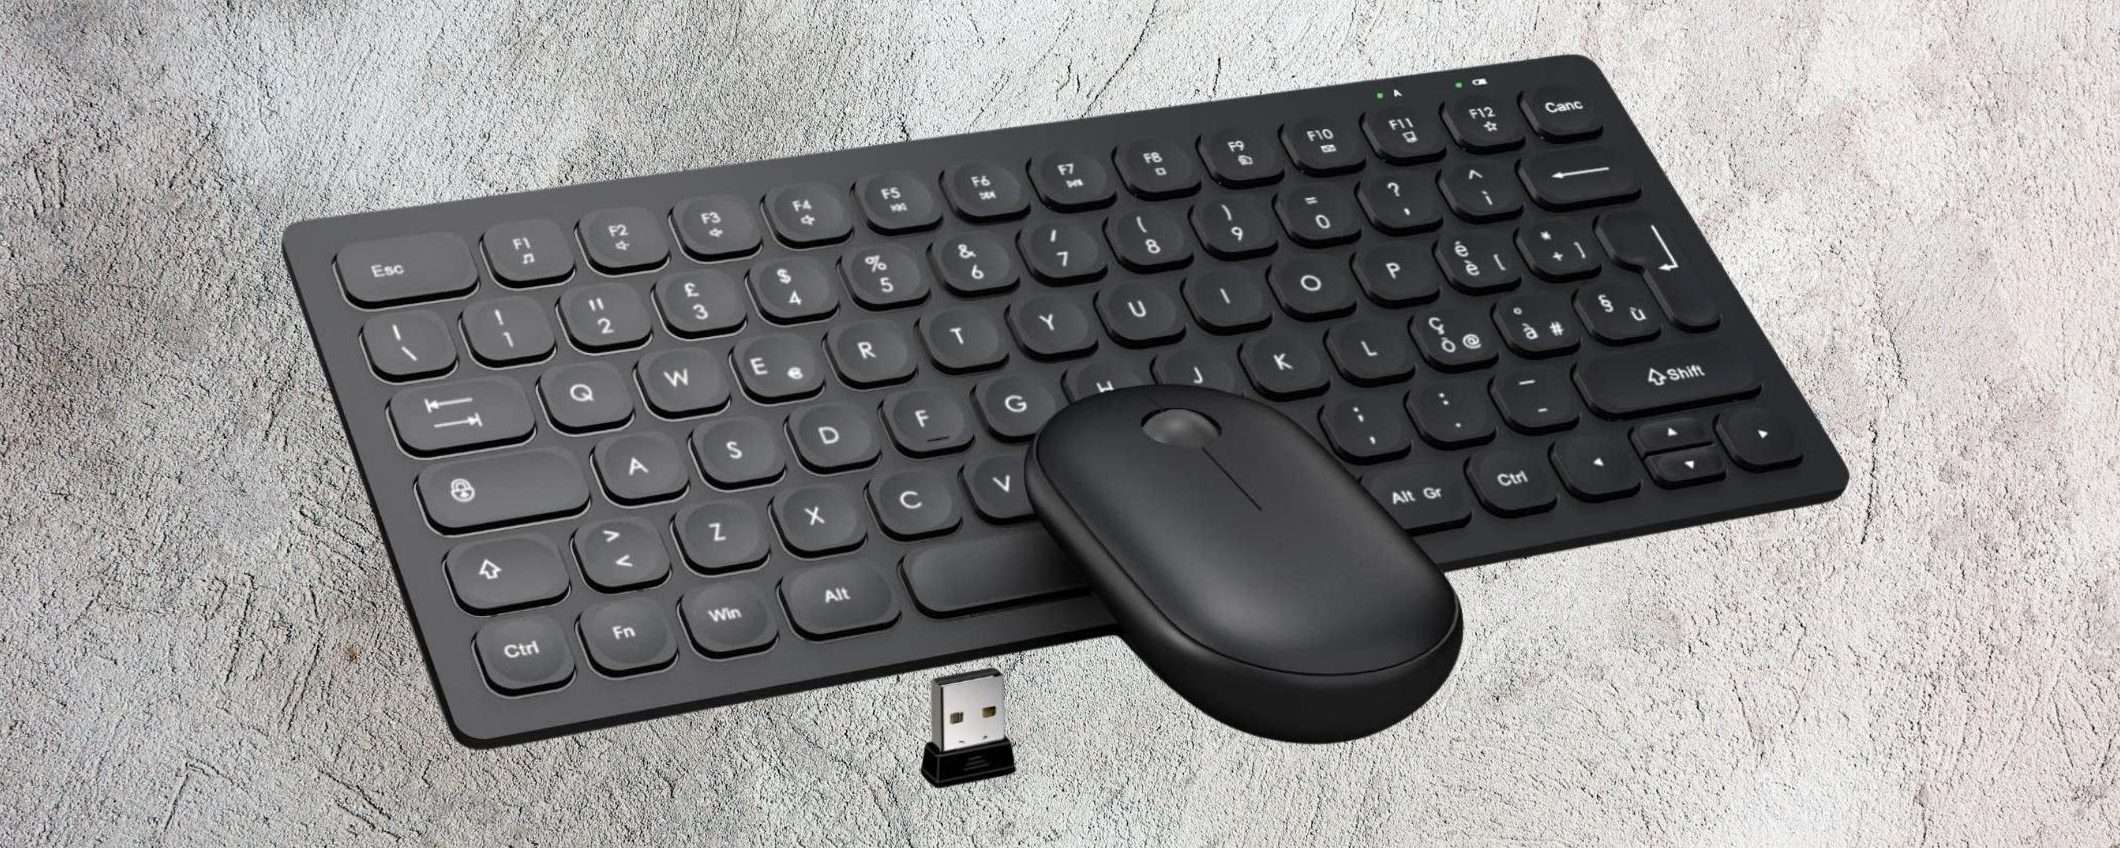 Tastiera e mouse wireless, prezzo minimo e super silenzioni: affare